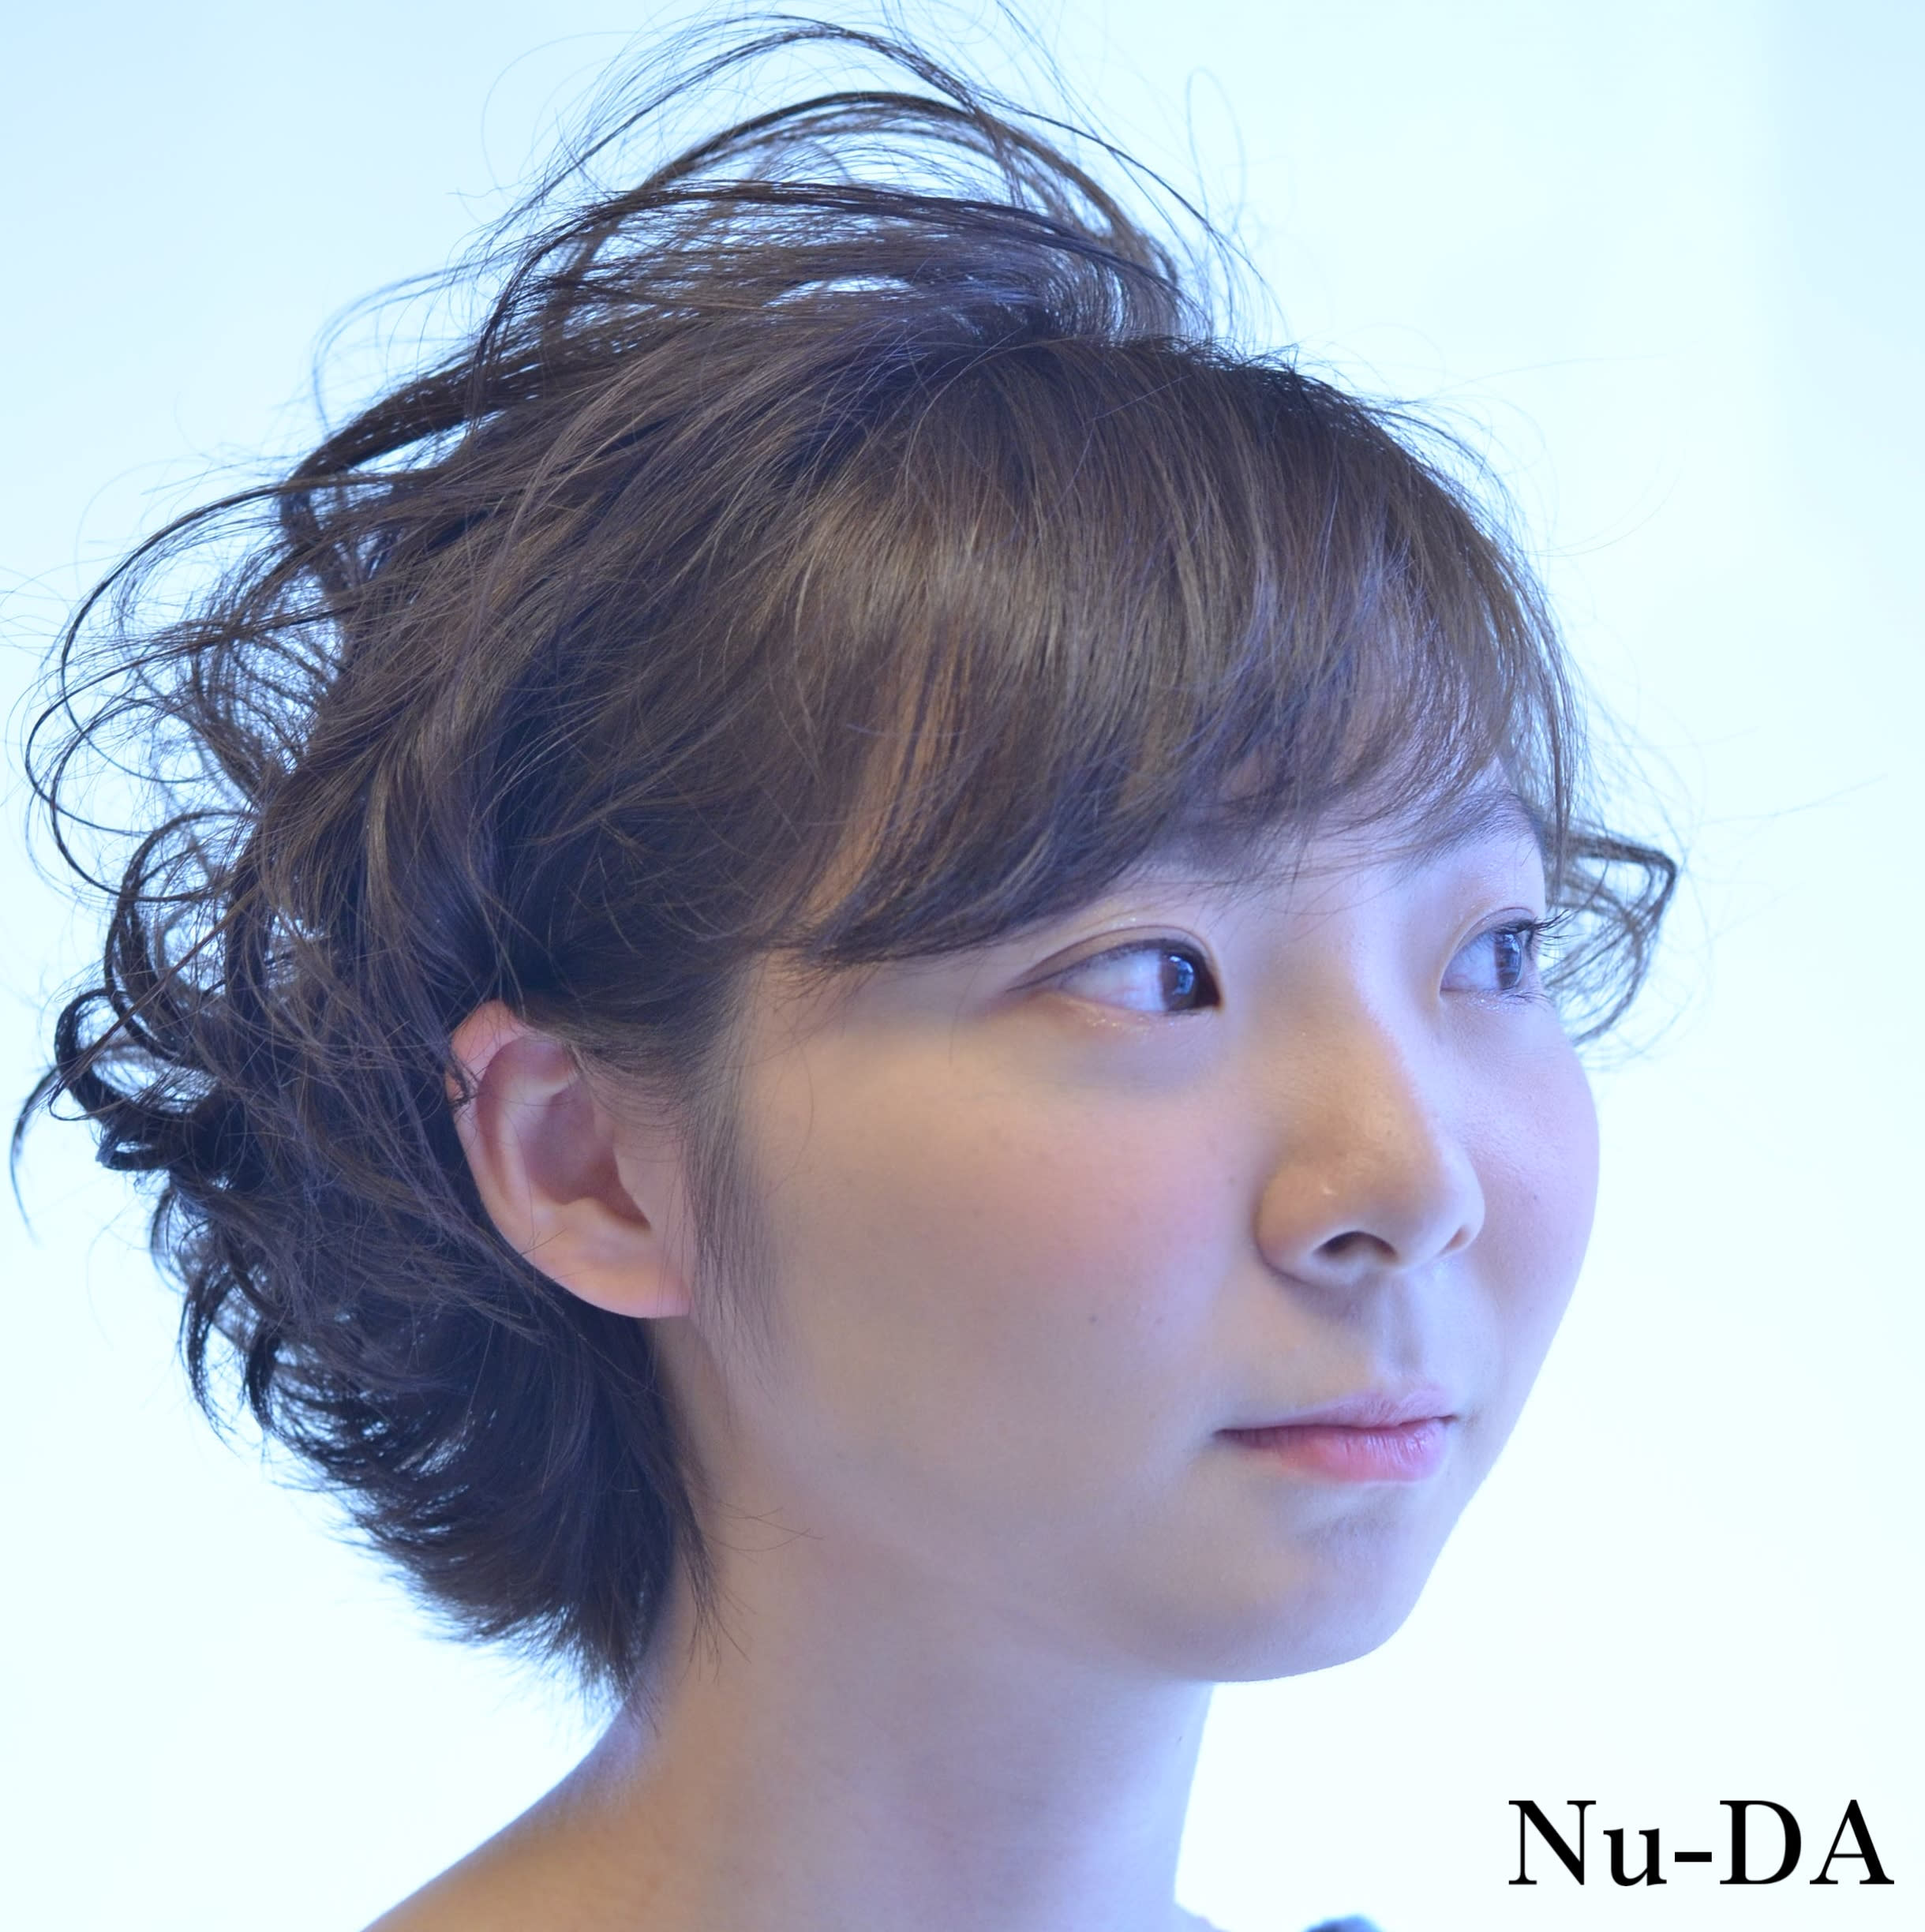 hair Nu-DA【ヘアヌーダ】のスタイル紹介。【Nu-DA】ショートボブパーマ